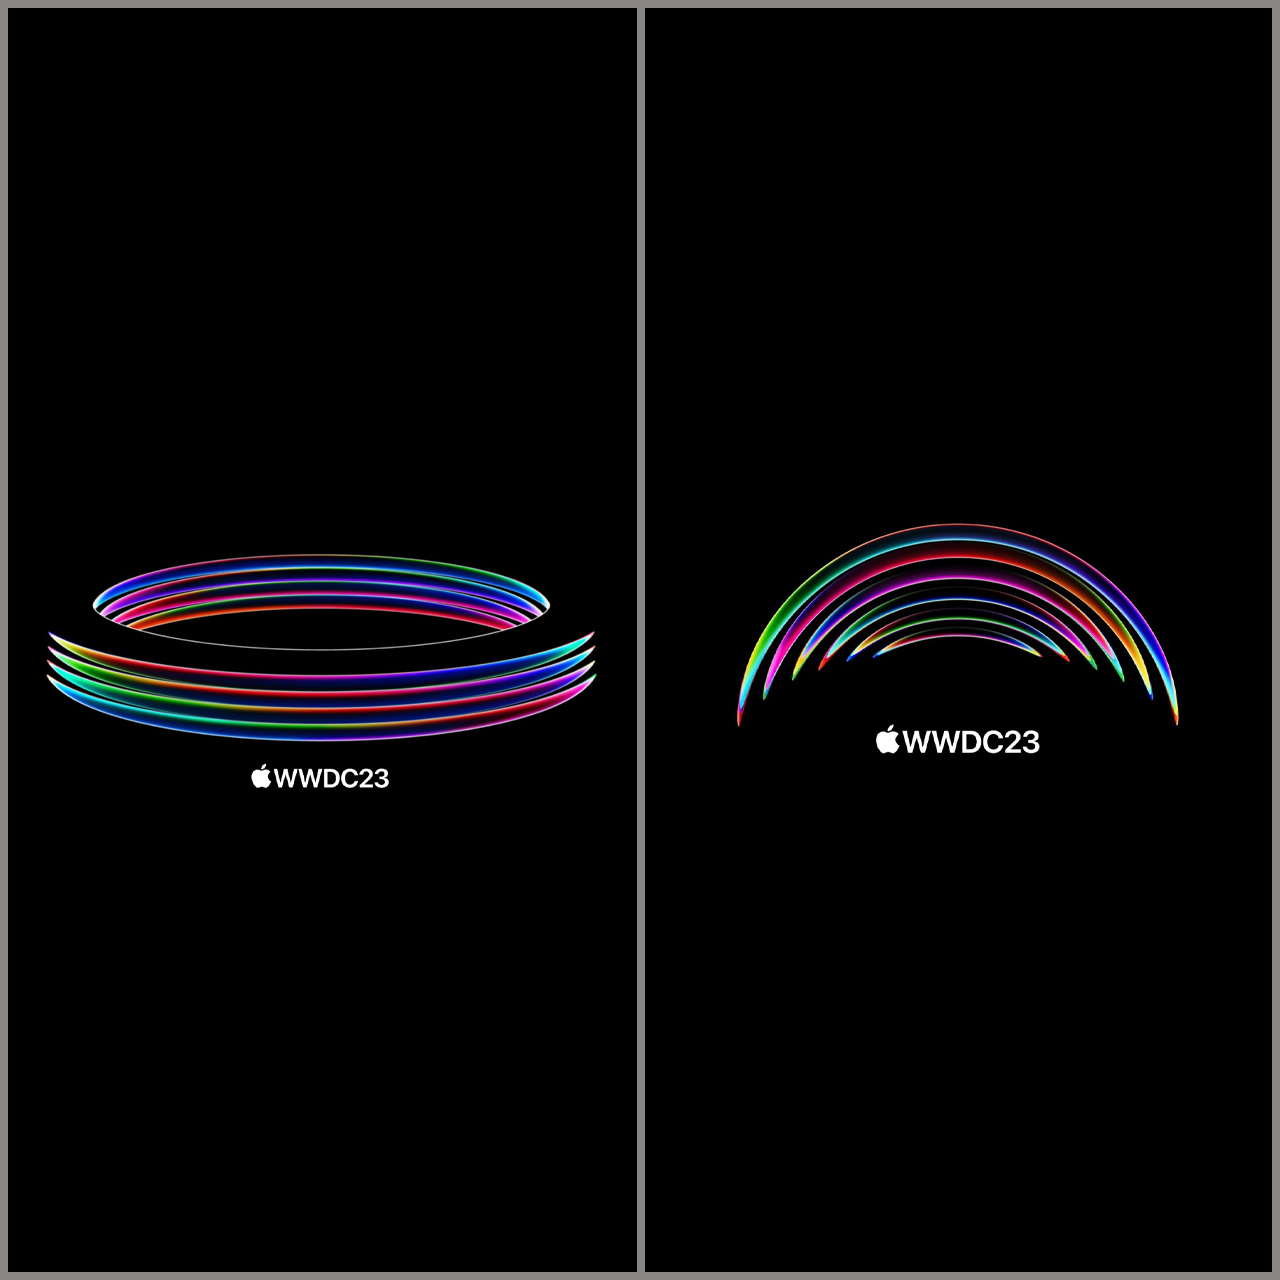 Mời tải bộ hình nền 2 dải màu cực độc dành riêng cho iPhone